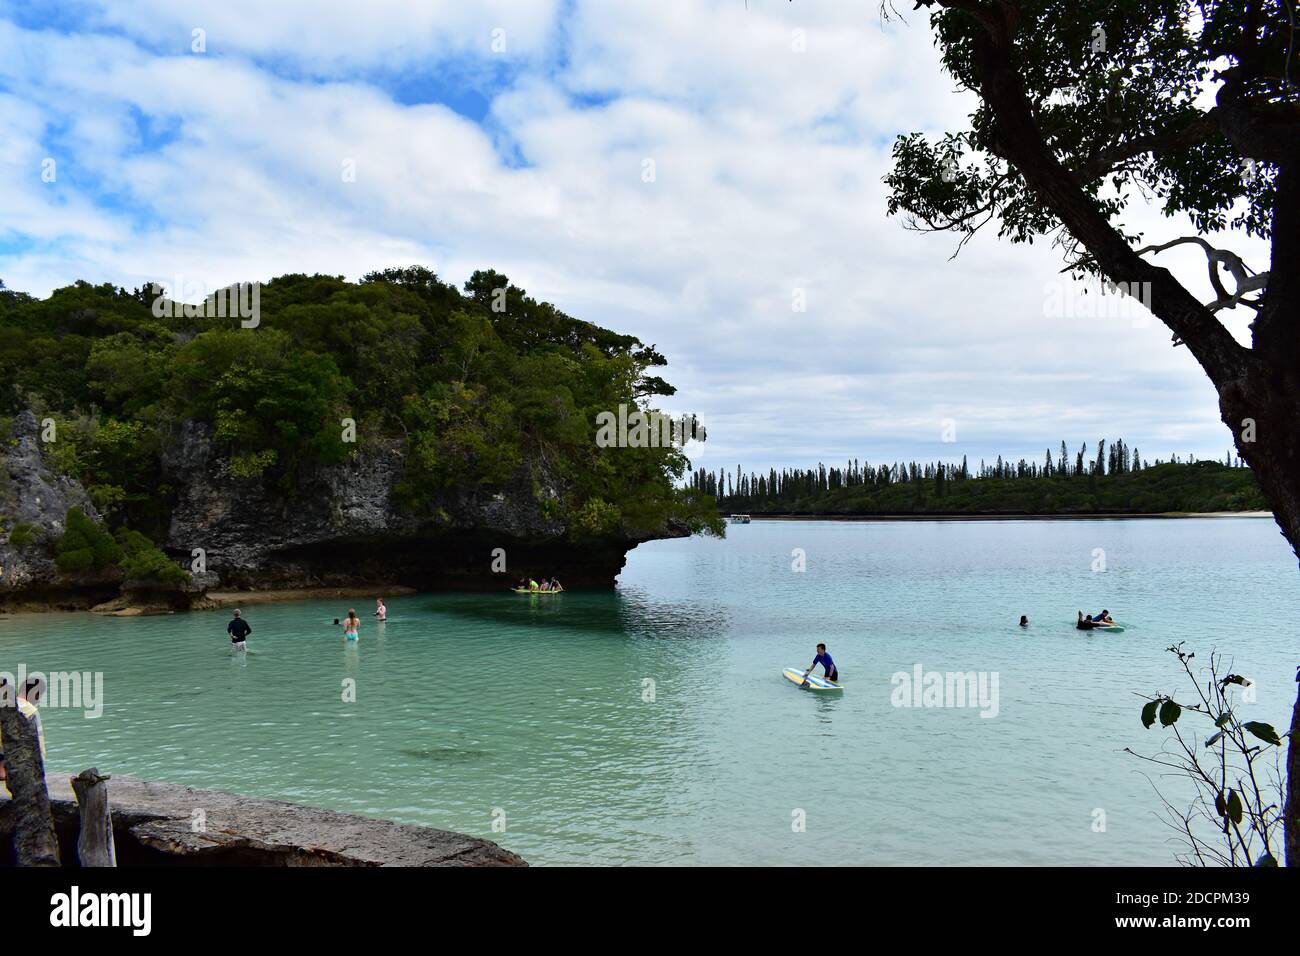 La roccia sacra, Rocher de Kaa Nuë Méra nella baia di Kanumera sull'isola di Pines, Nuova Caledonia. Il turista nuota nelle acque blu e gioca sulle tavole da paddle. Foto Stock